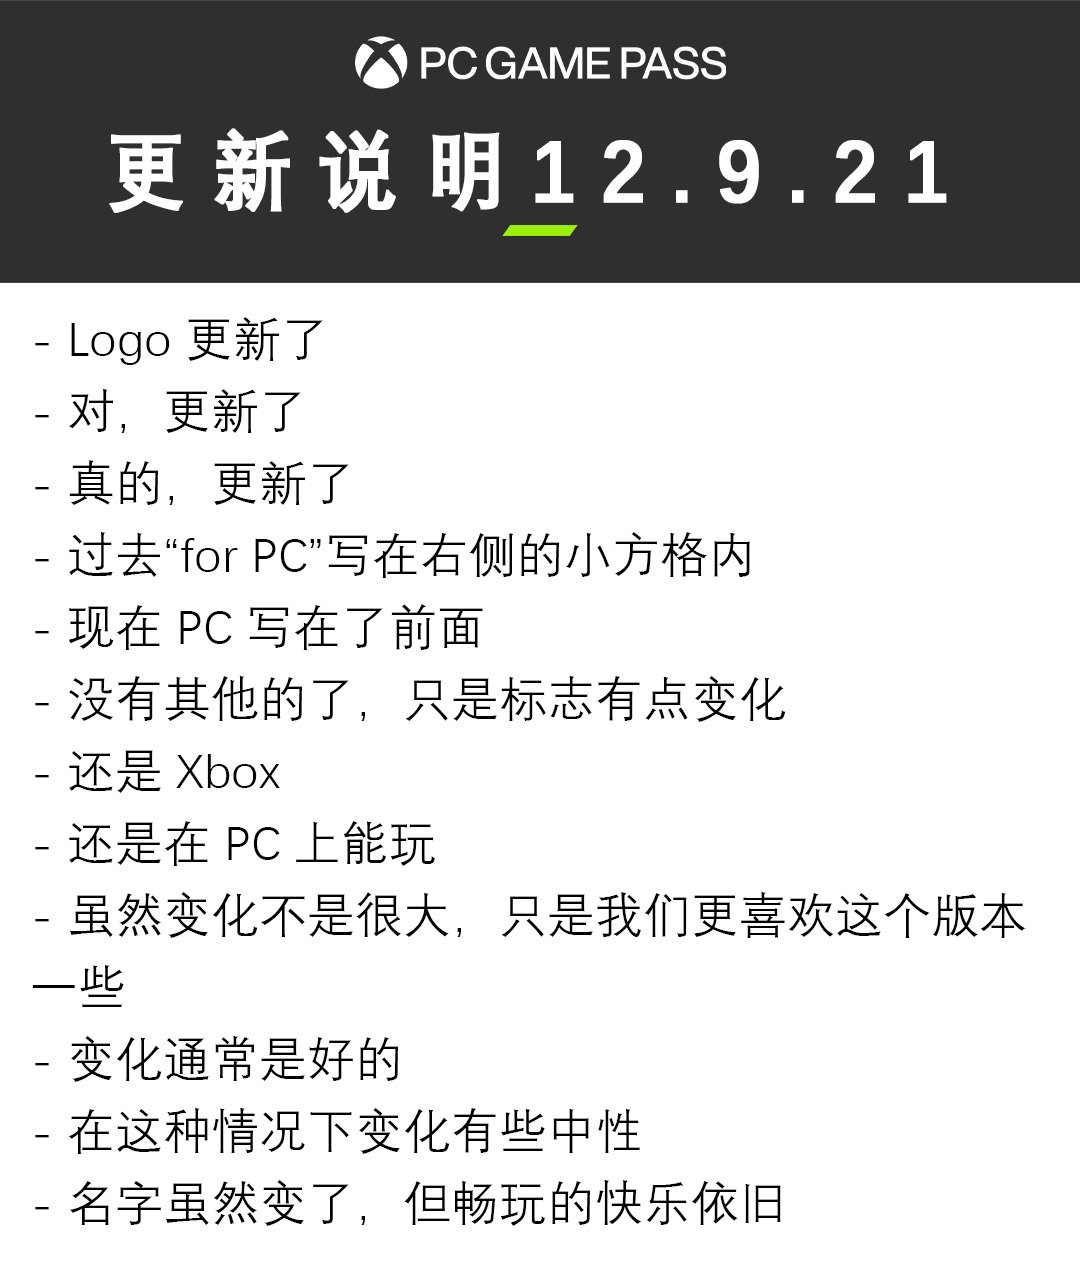 微软宣布PC版Xbox Game Pass更名为PC Game Pass